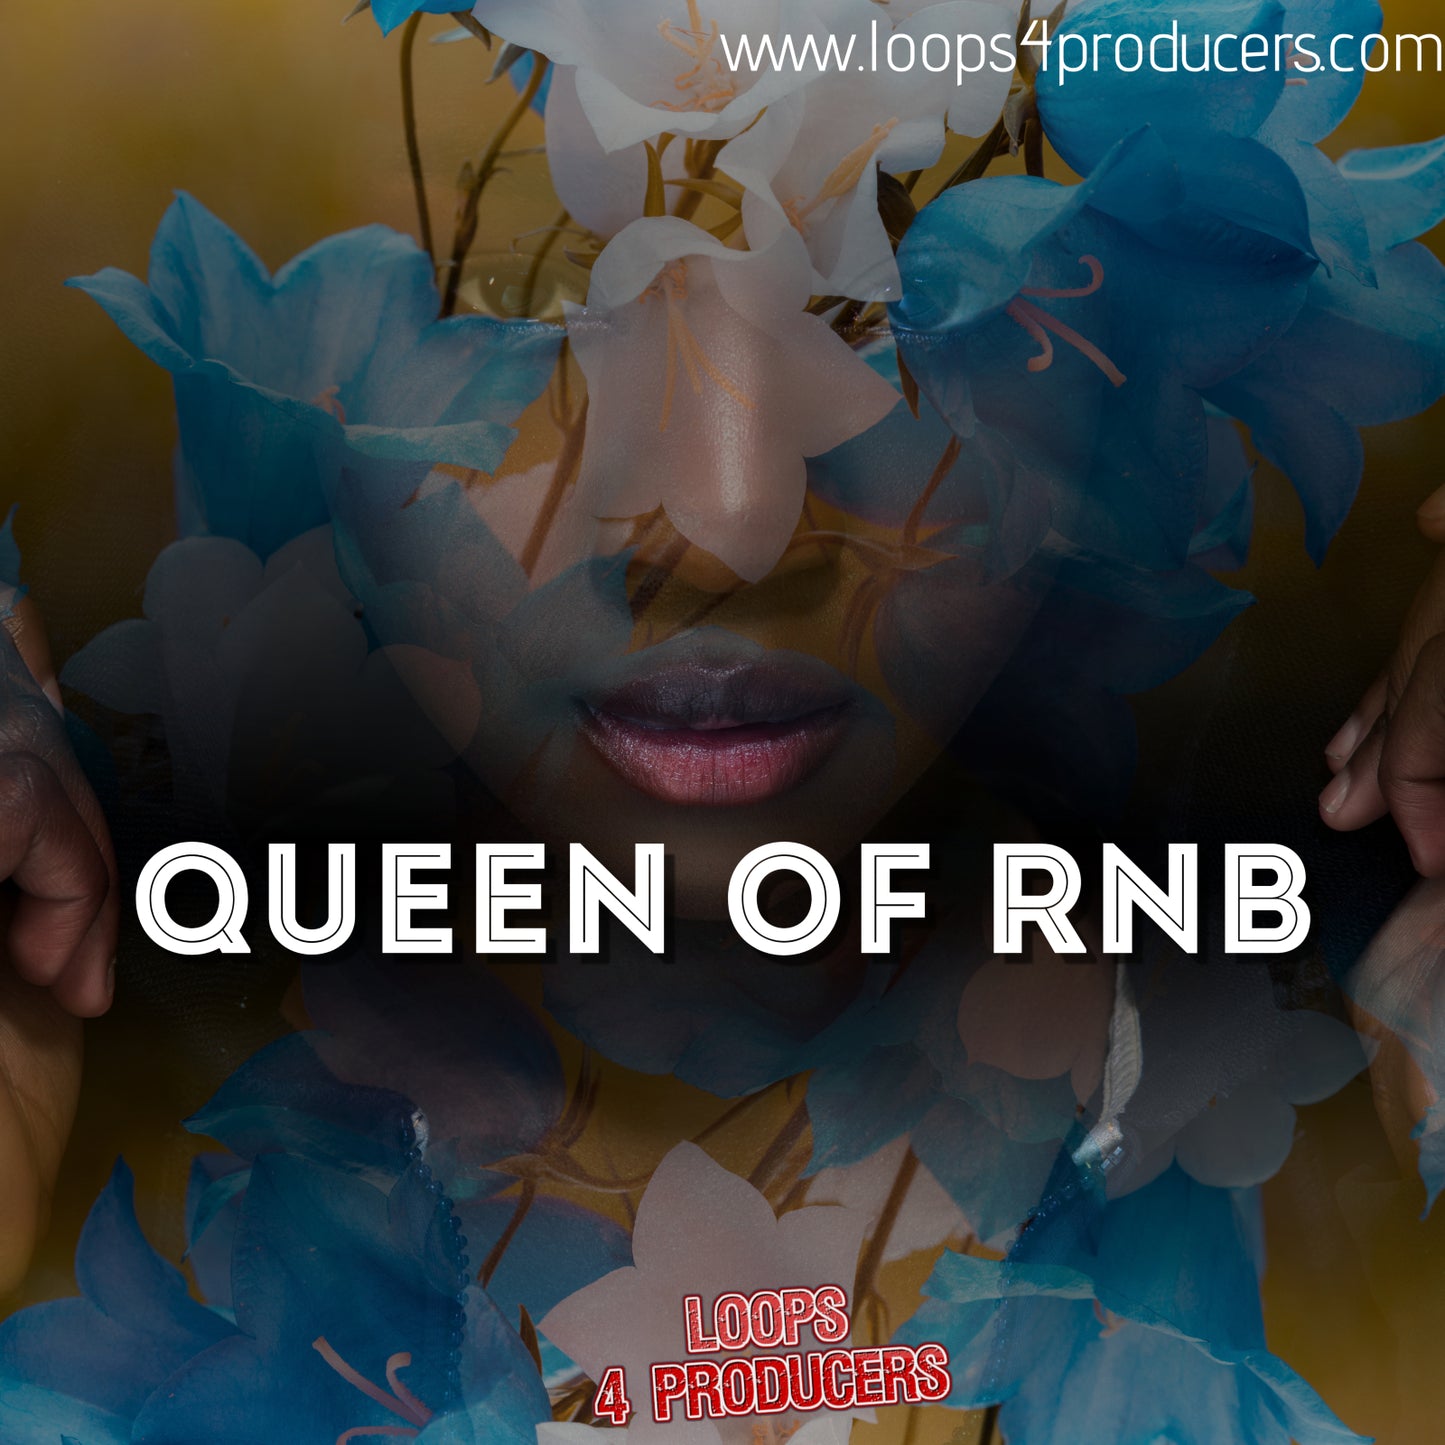 Queen of RnB